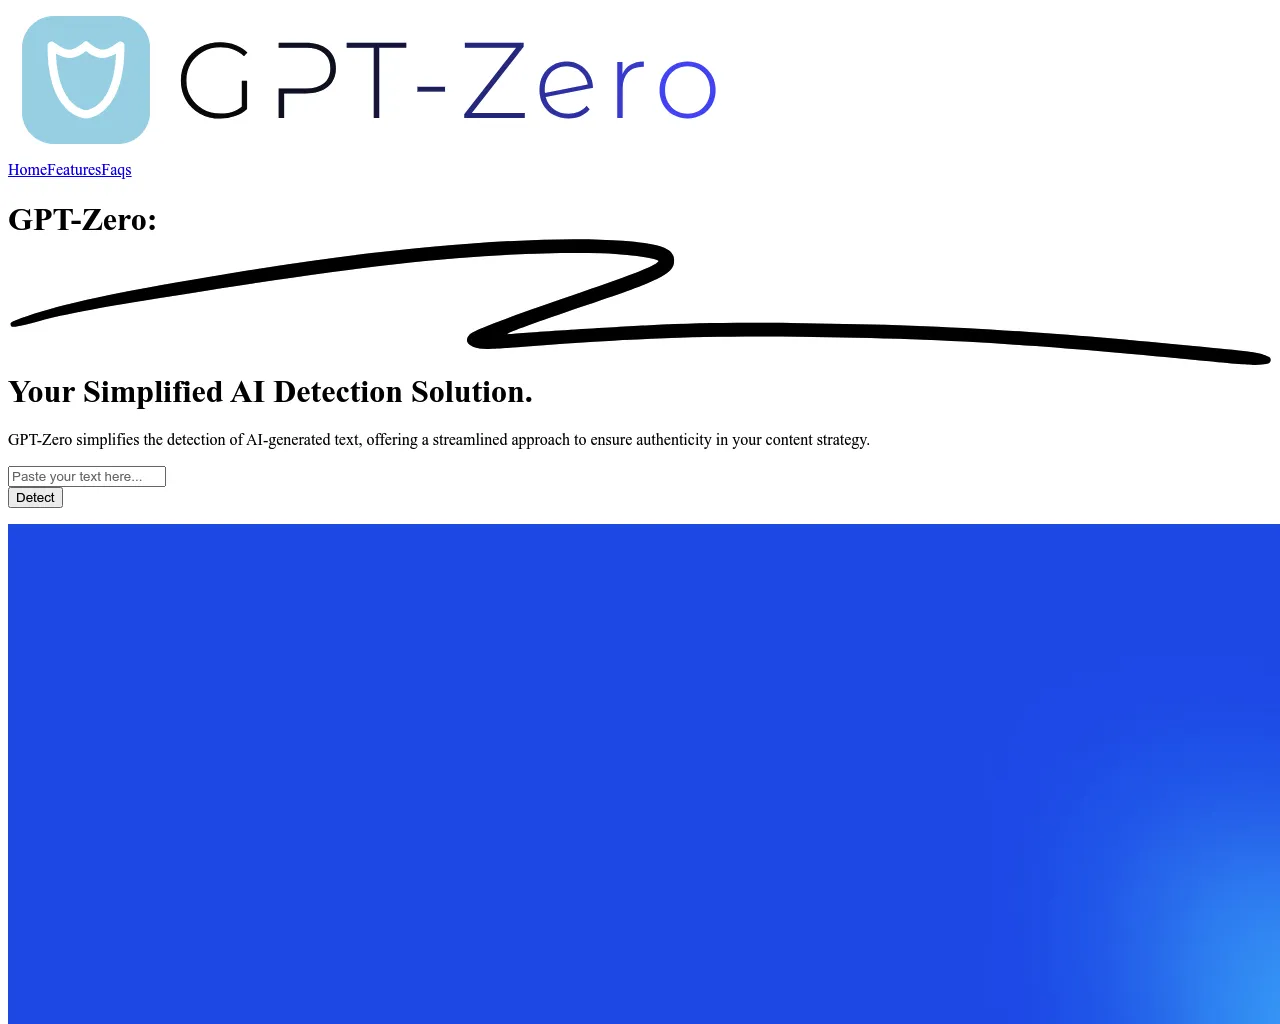 GPT-Zero